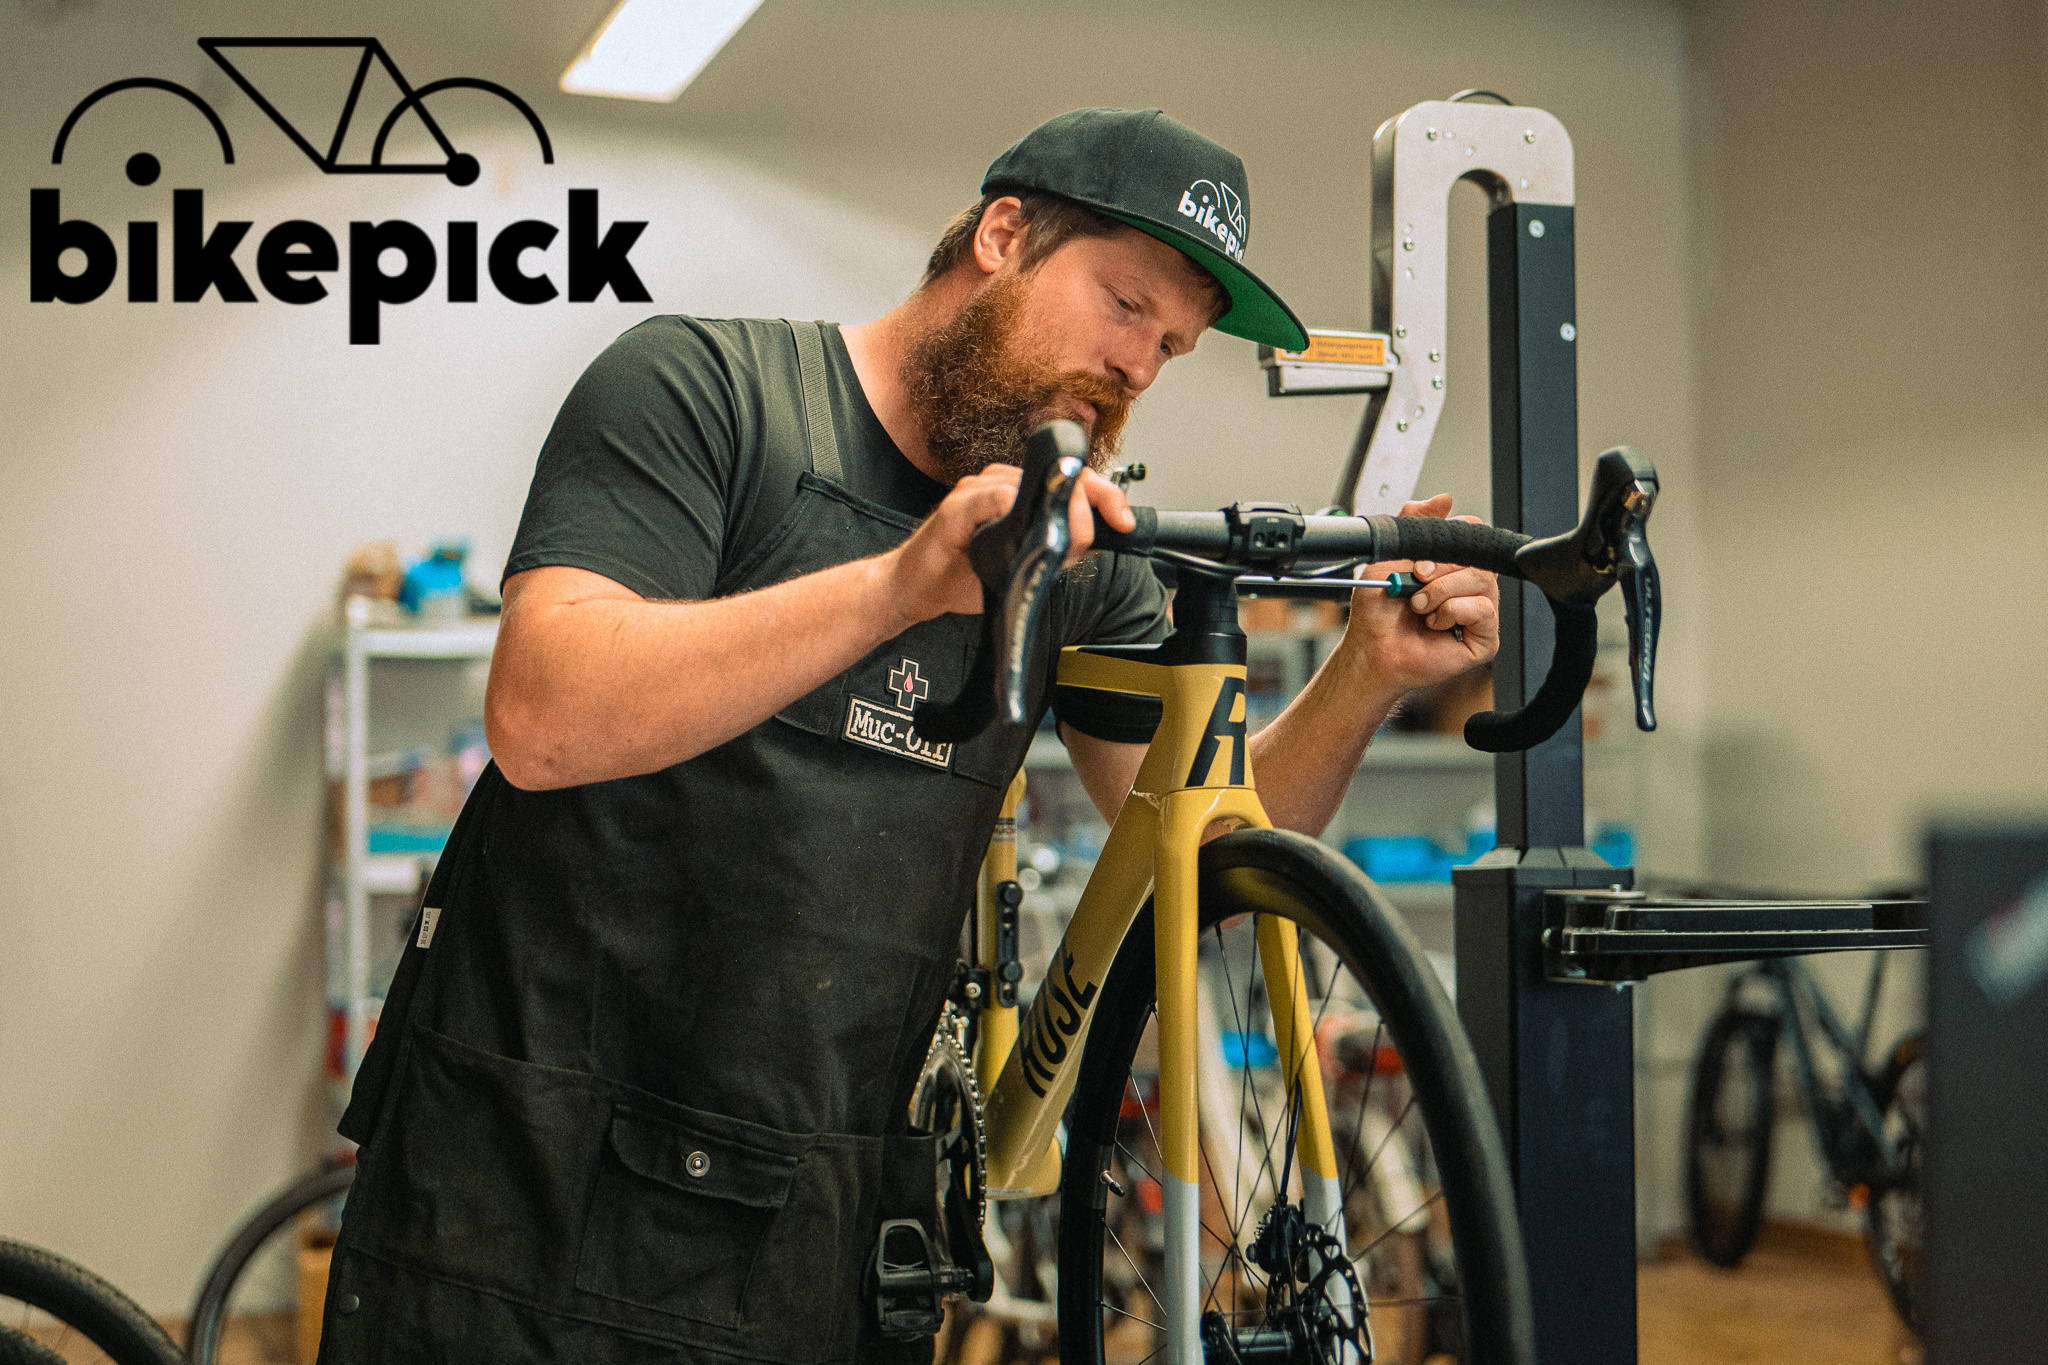 bikepick ist Servicepartner rund ums Fahrrad beim 10. triathlon.de CUP München